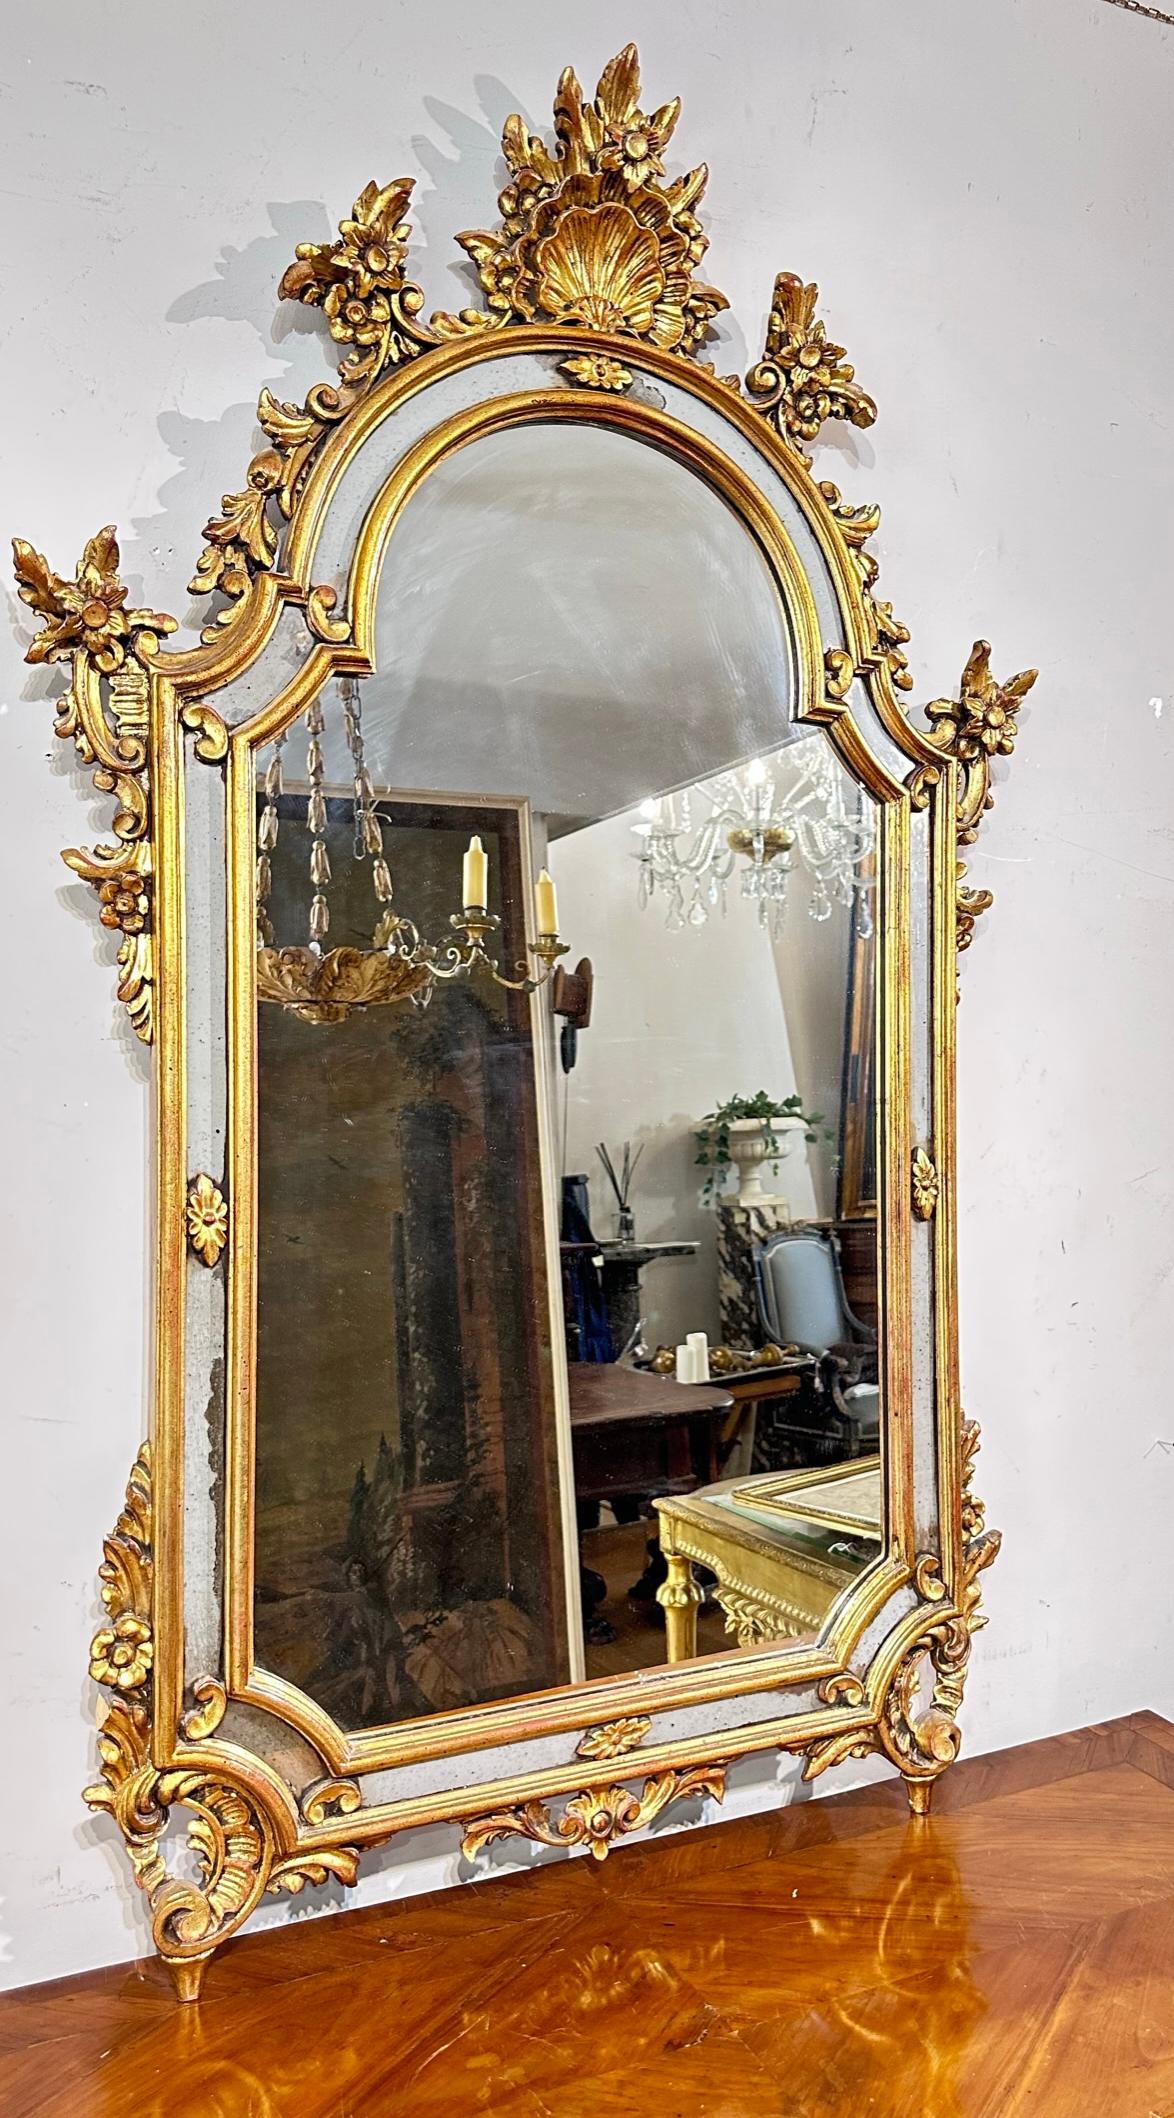 Elégant miroir en bois sculpté et doré avec encadrement floral et coquillage. La partie centrale est en miroir. Le cadre comporte également des inserts de miroir. Fabrication italienne de la seconde moitié du XIXe siècle.

Dimensions HxLxP 130 x 82